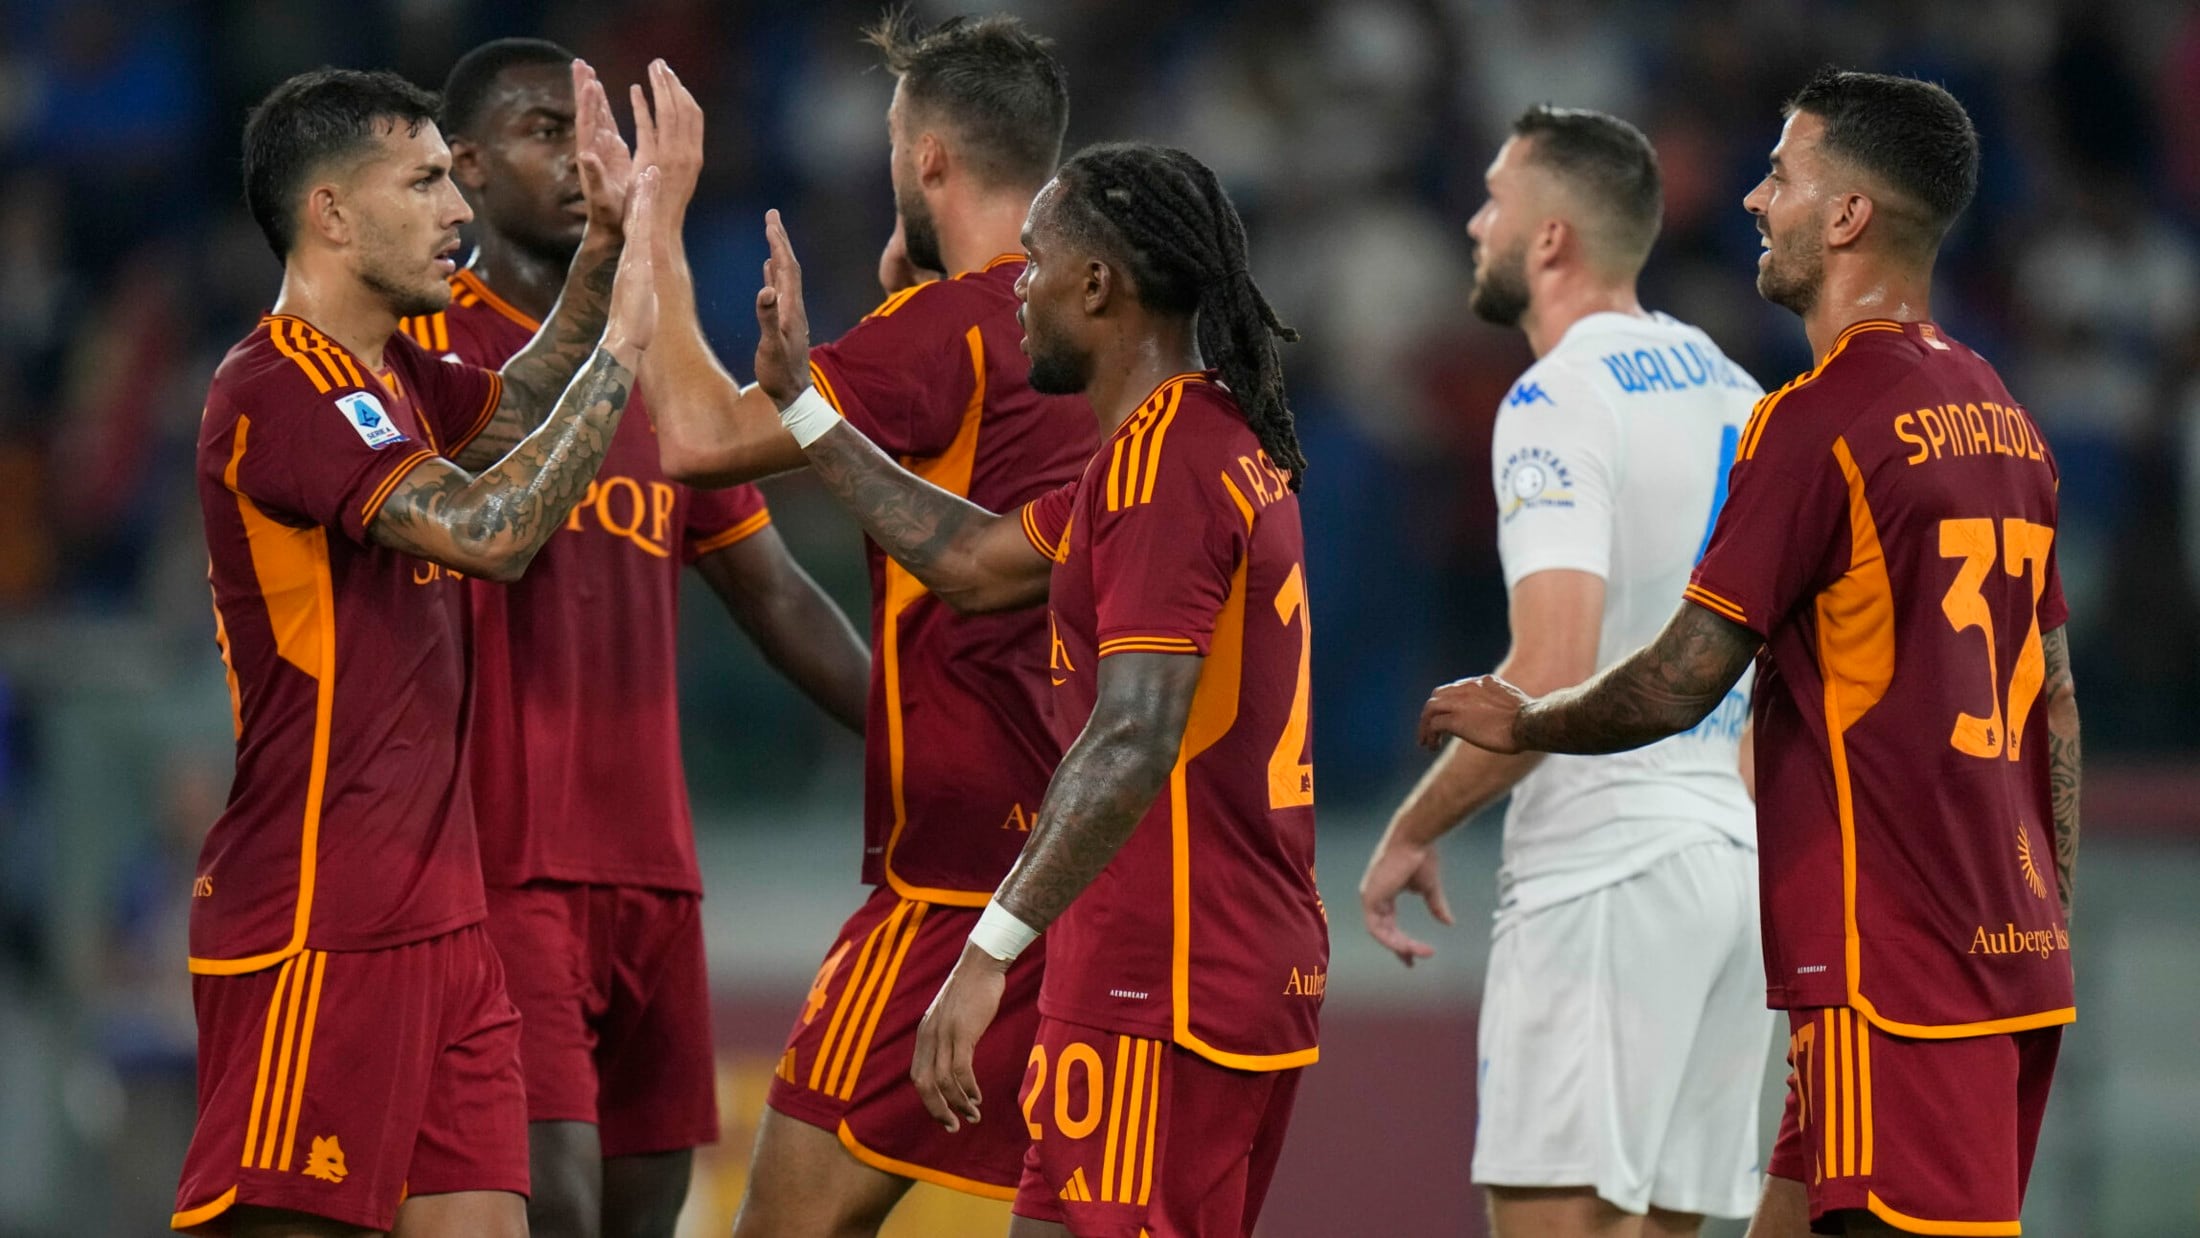 Serie A - AS Roma feiert 1. Saisonsieg - 7:0 gegen Empoli!